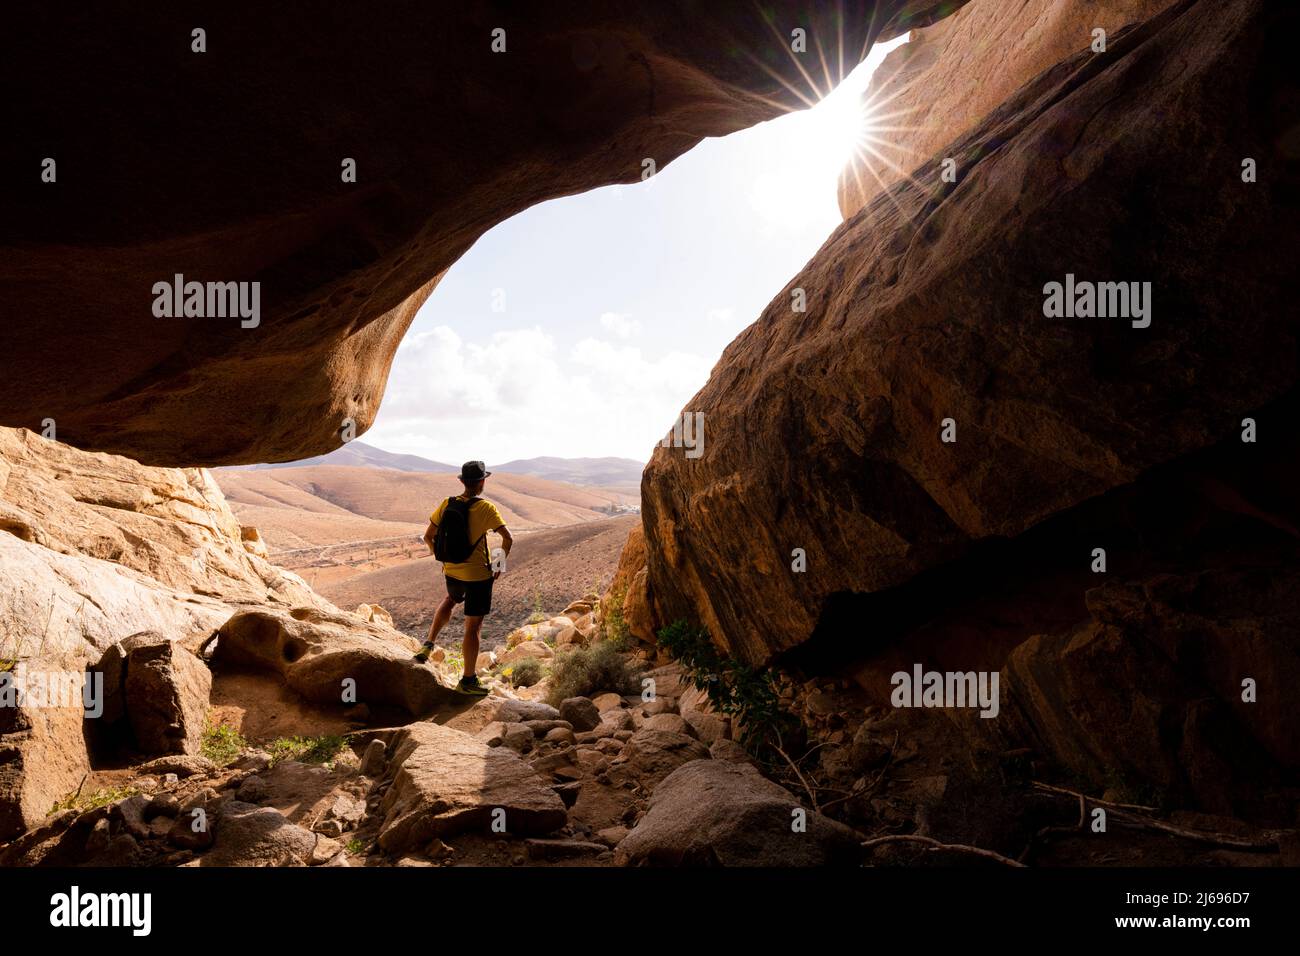 Homme appréciant la vue à l'intérieur des canyons de grès, Barranco de las Penitas, Fuerteventura, îles Canaries, Espagne, Atlantique, Europe Banque D'Images